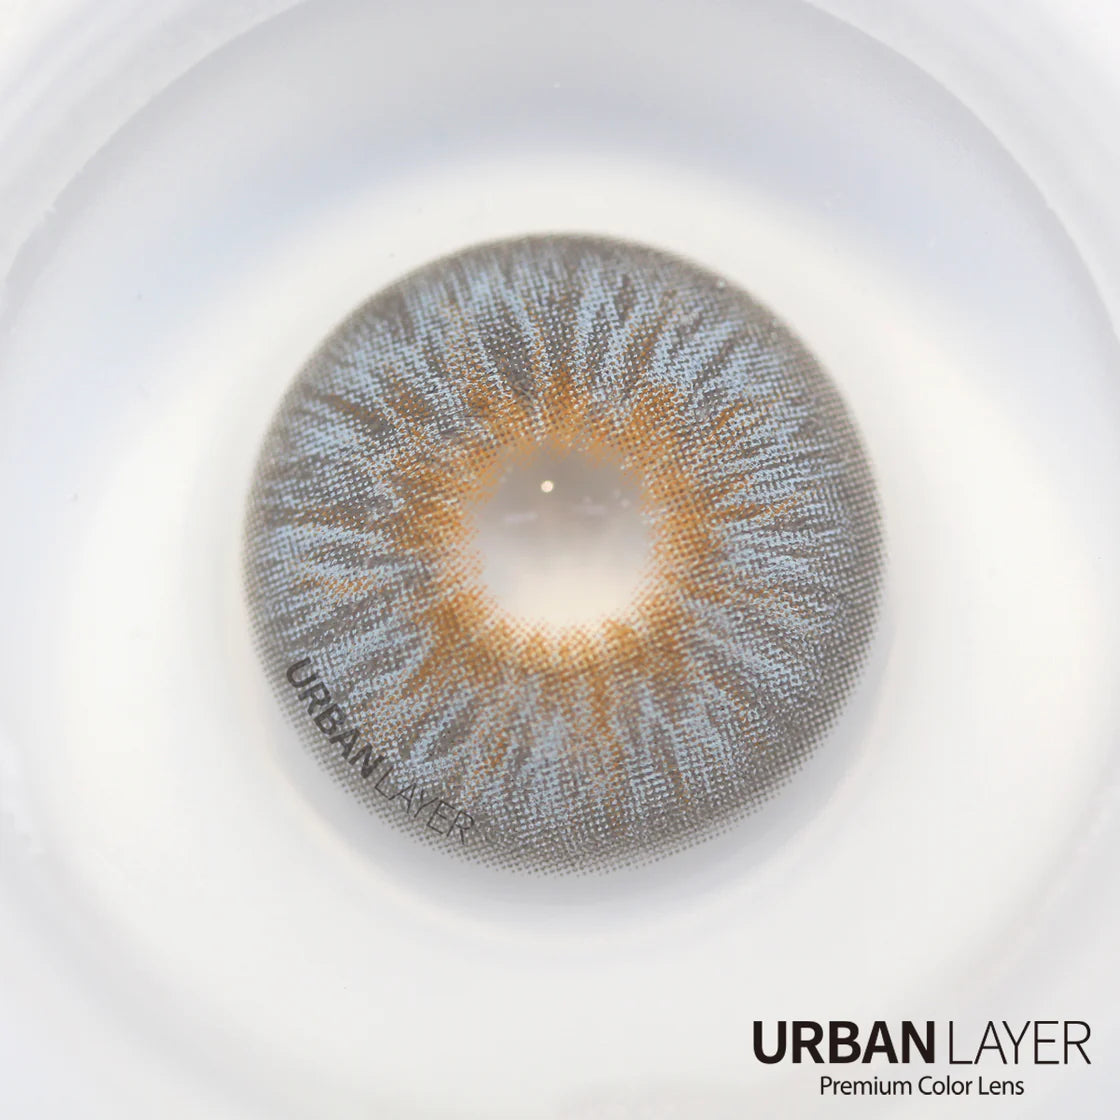 Avatar gray (mini-pupil) Urban Layer